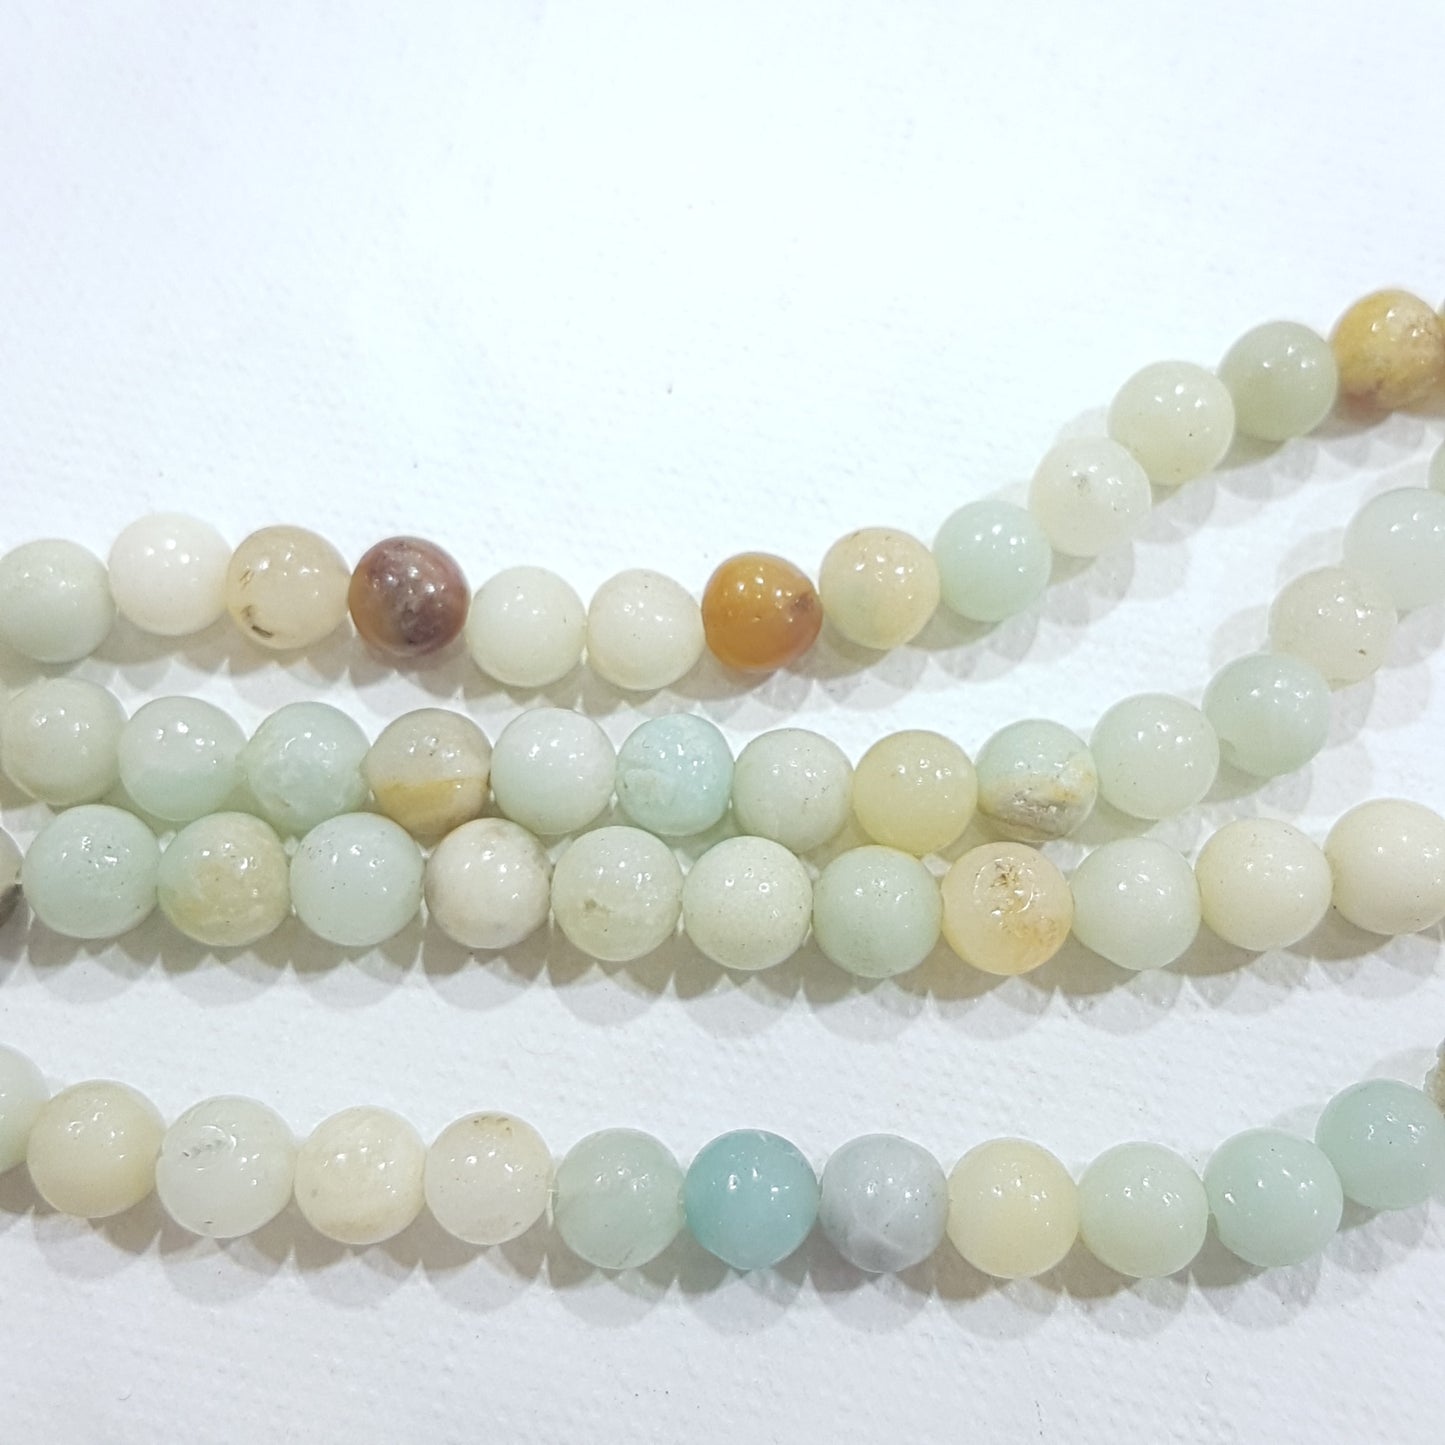 6mm Amazonite Gemstone Beads